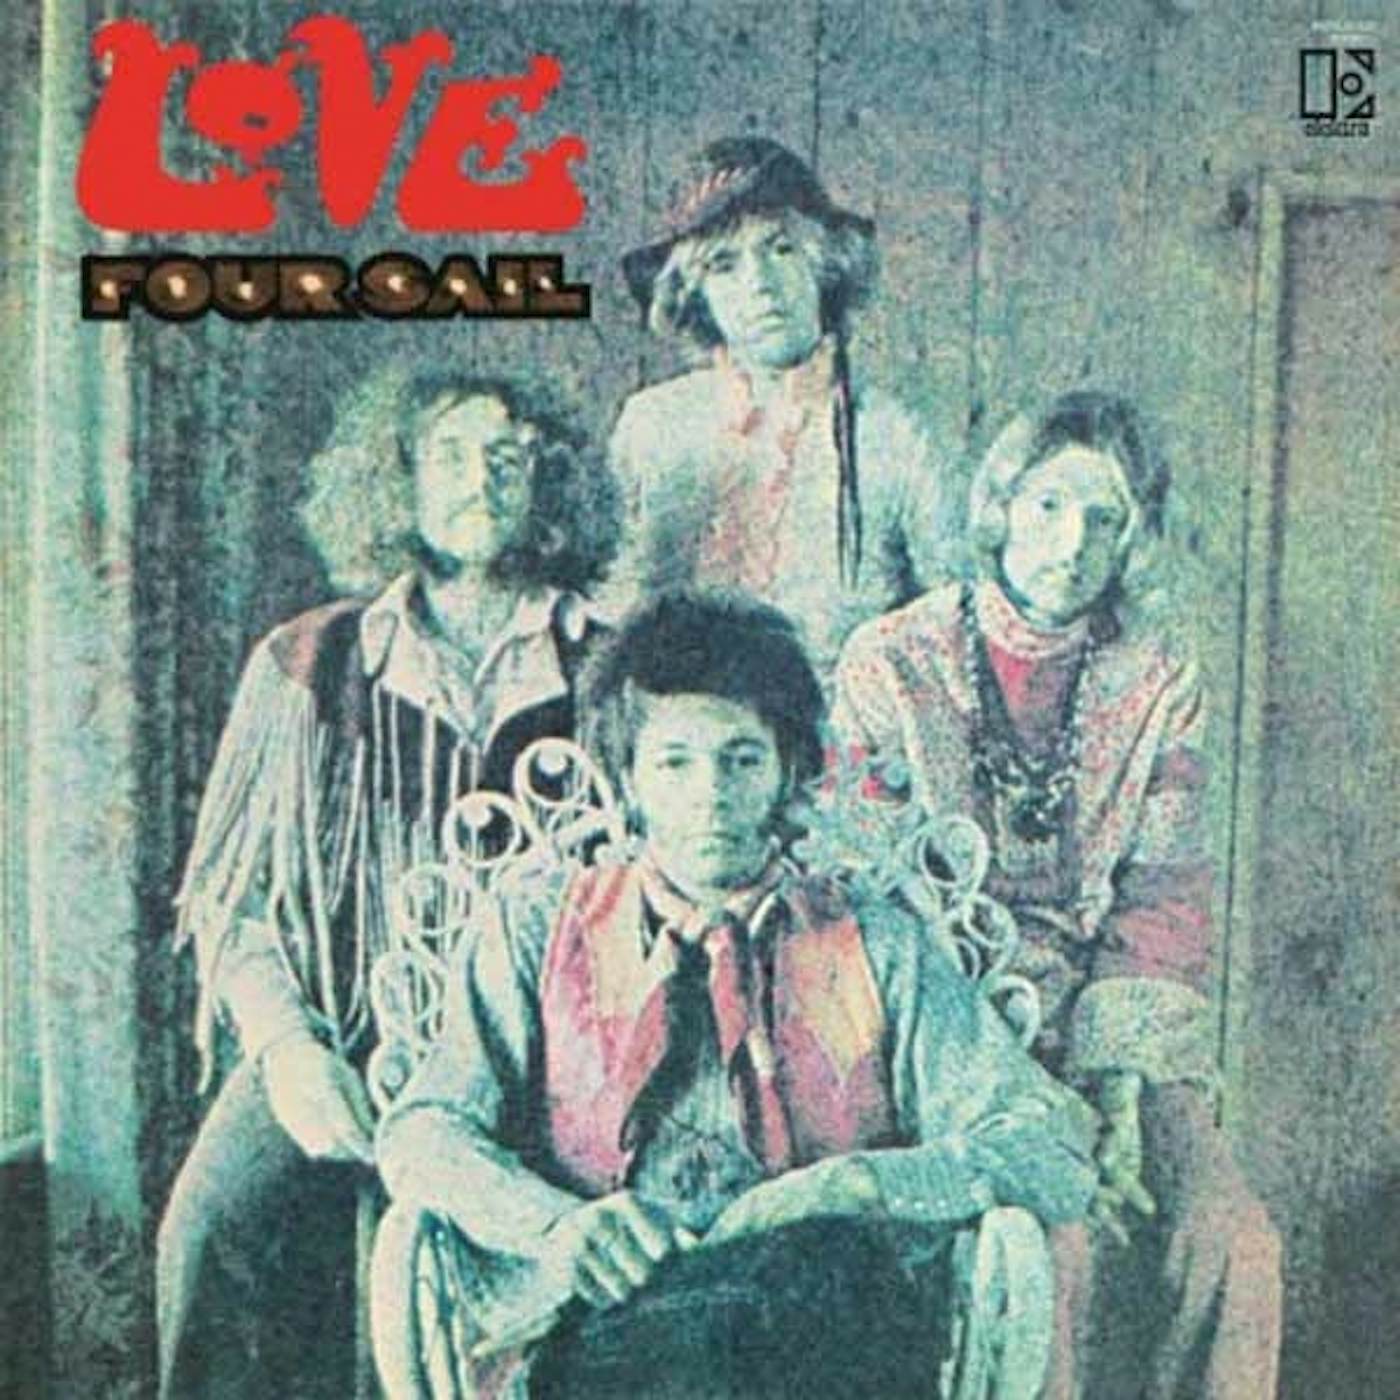 Love LP - Four Sail (Expanded) (Vinyl)